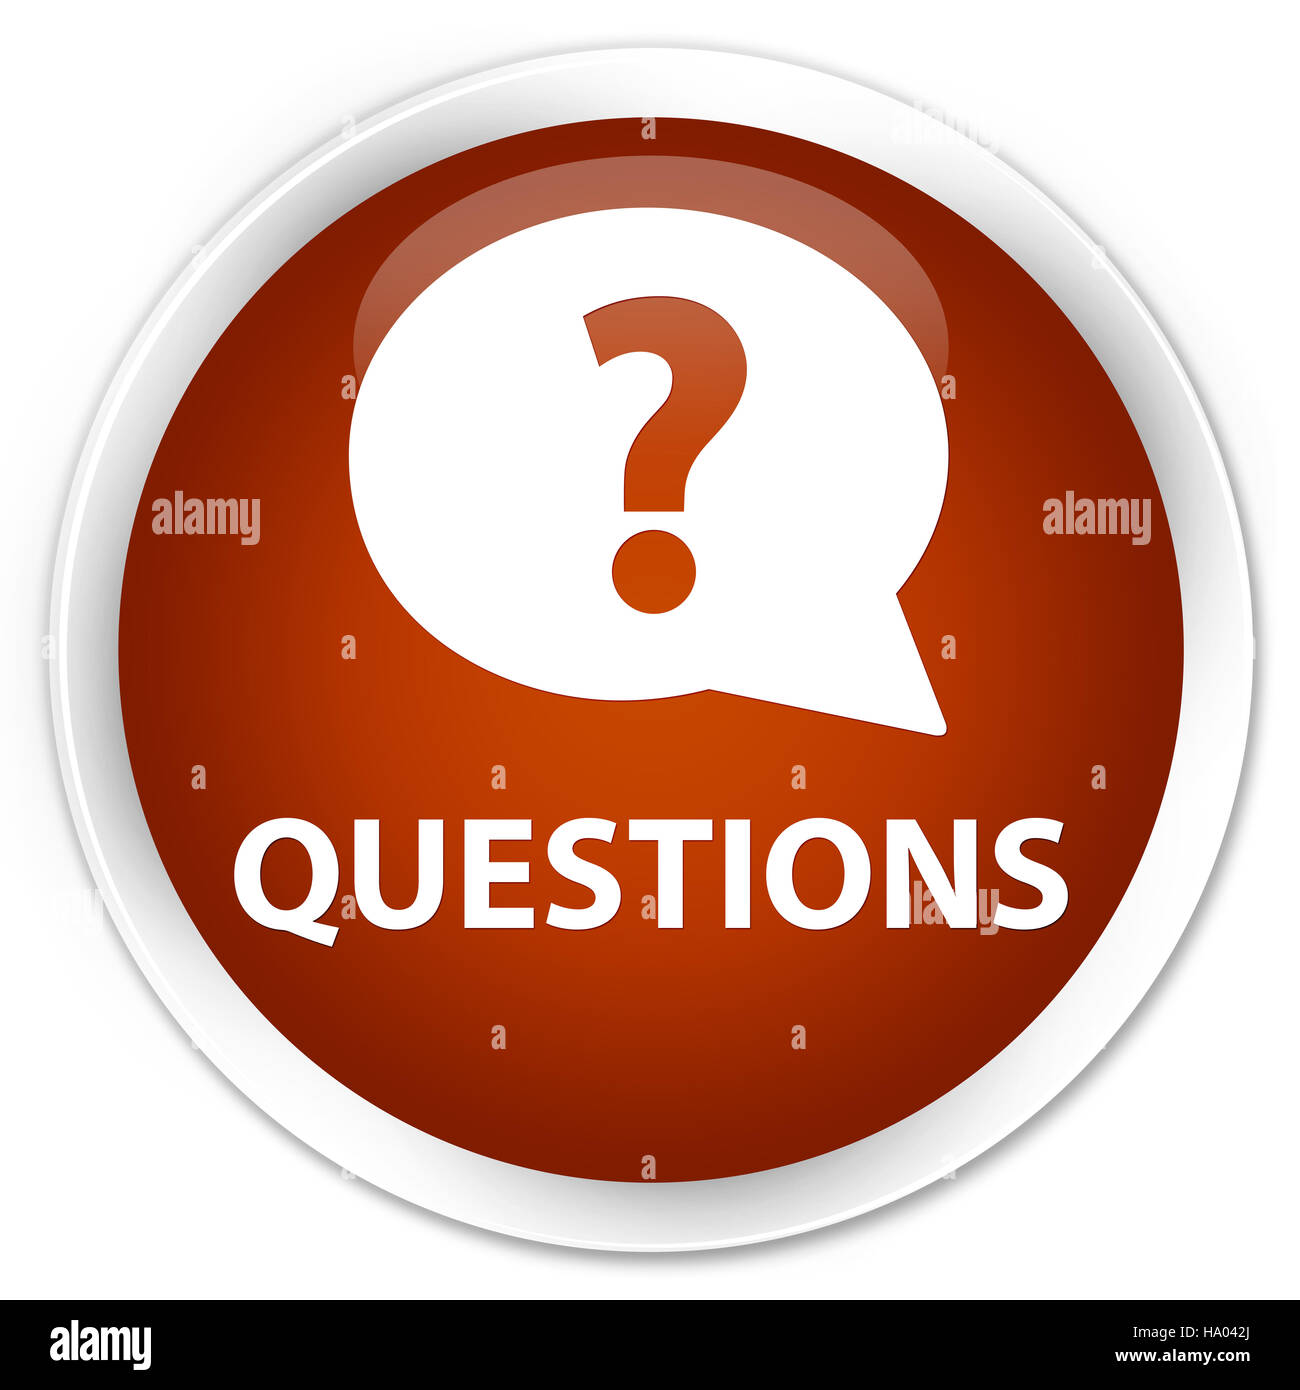 Questions (icône bulle) isolé sur bouton rond marron premium abstract illustration Banque D'Images